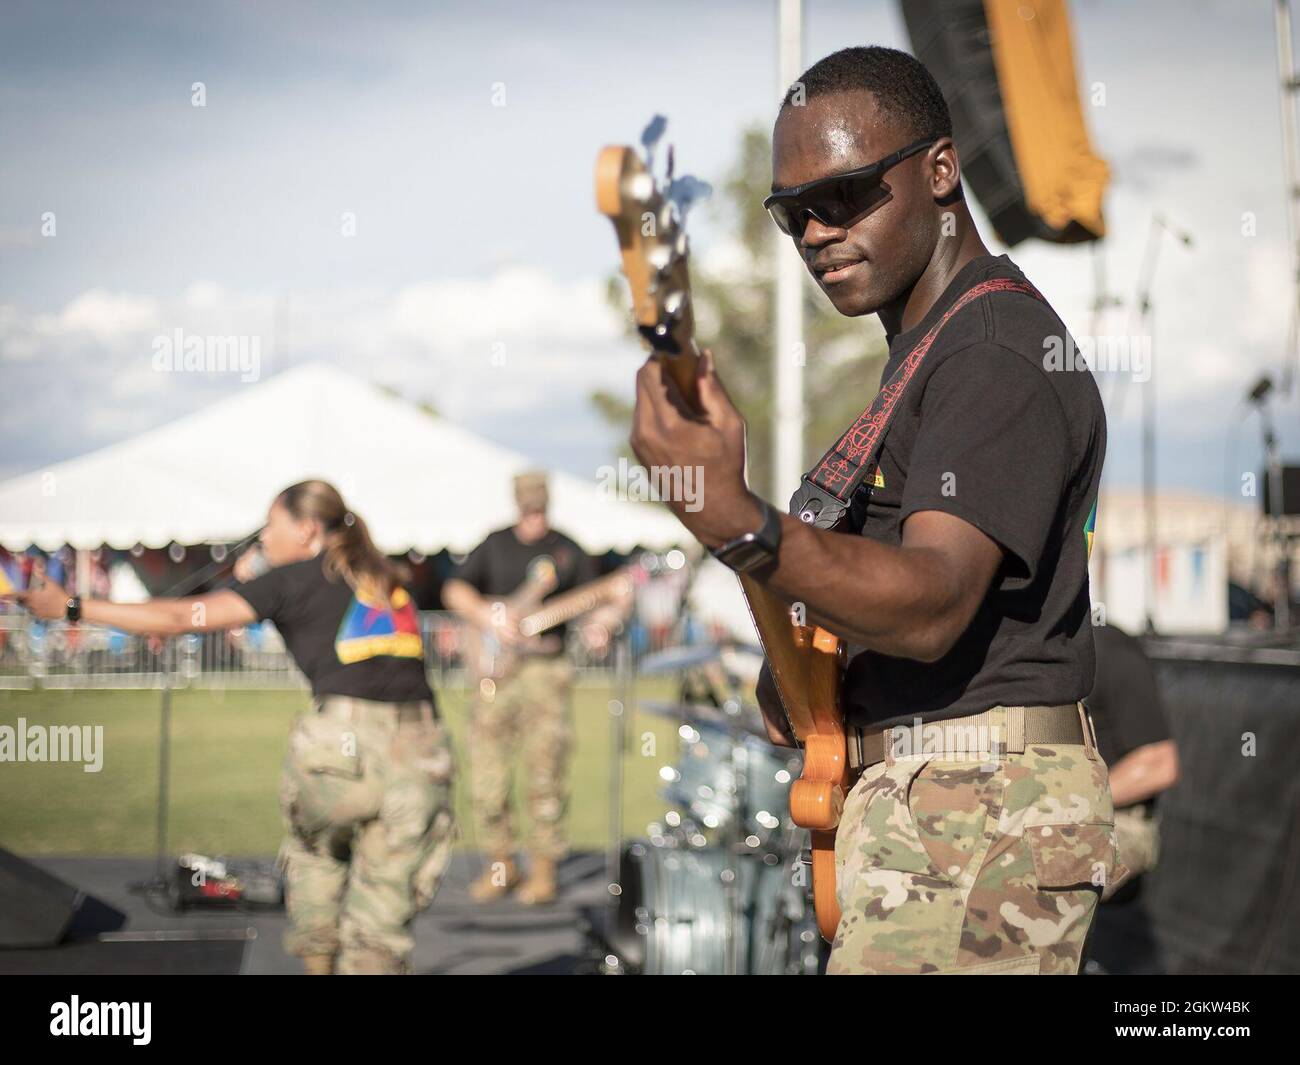 Spc. Aloysious Butler, ein Soldat und Musiker der 1st Armored Division Band, tritt im Pop Goes the Fort auf, der Feier des Unabhängigkeitstages, in Fort Bliss, Texas, am 4. Juli 2021. Butler spielt mit Iron will, der Rockband der 1. AD Band. Stockfoto